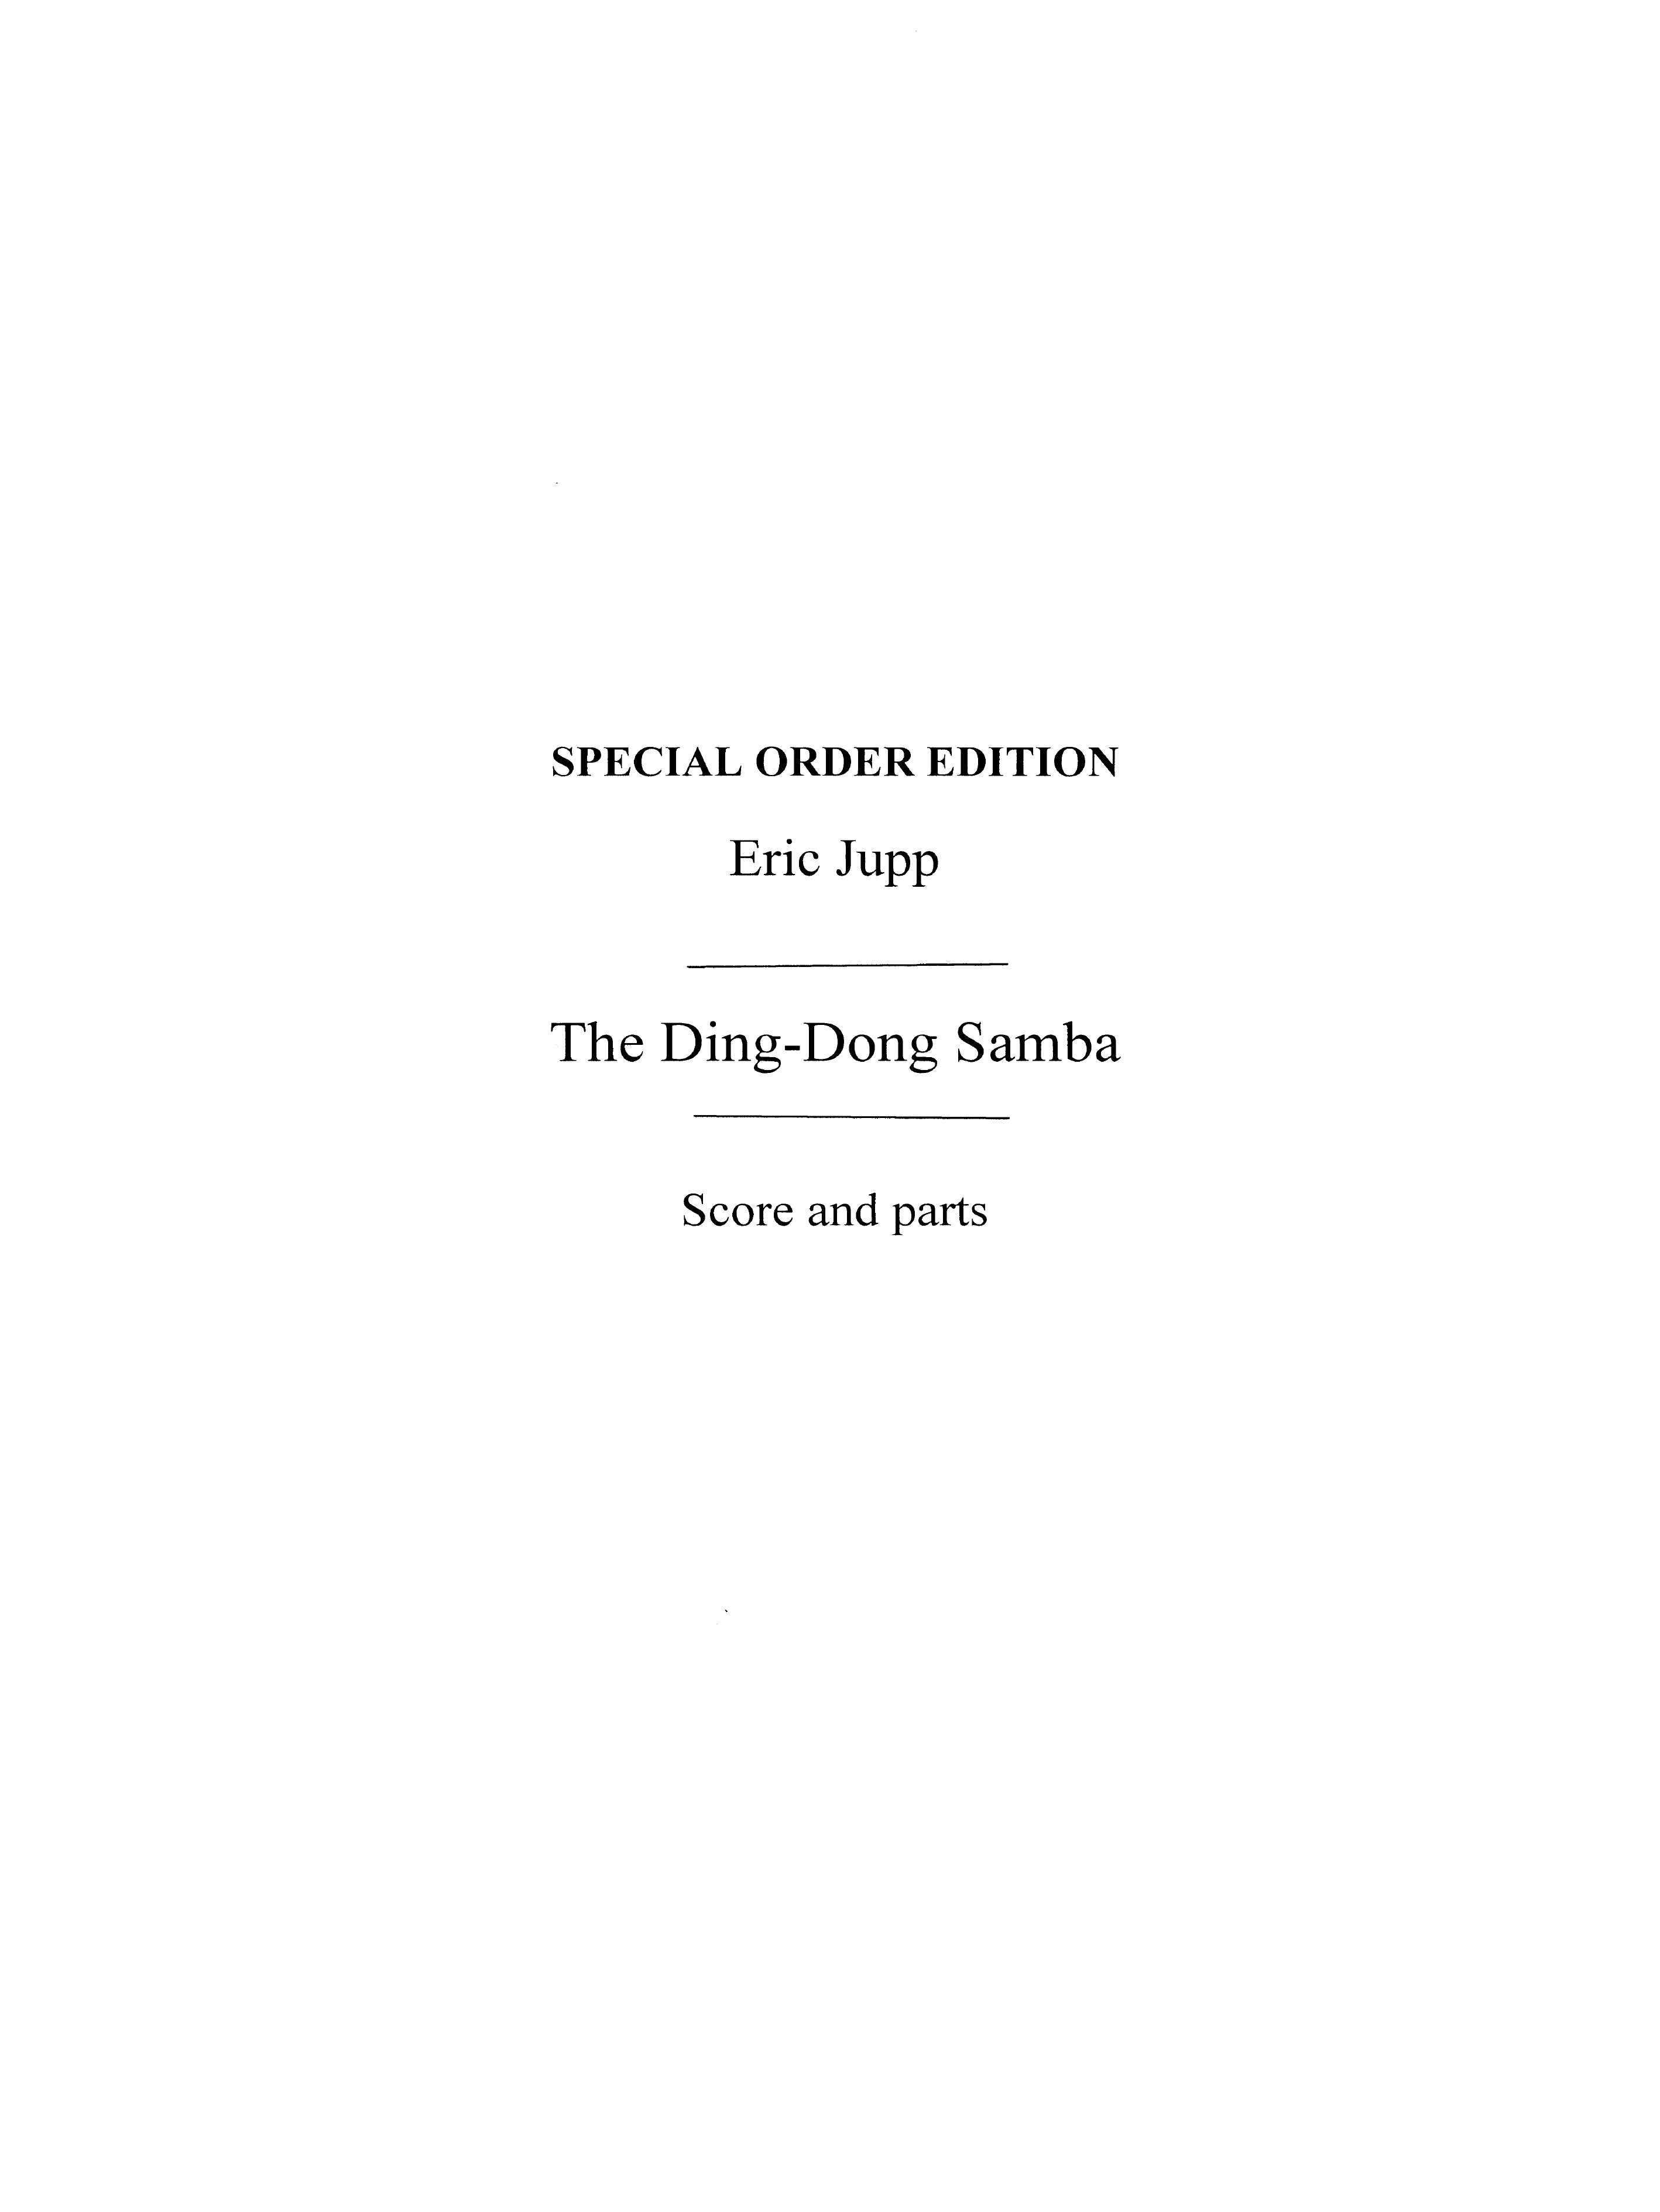 Jupp, E The Ding-dong Samba (Naylor) Orch Pf Sc/Pts